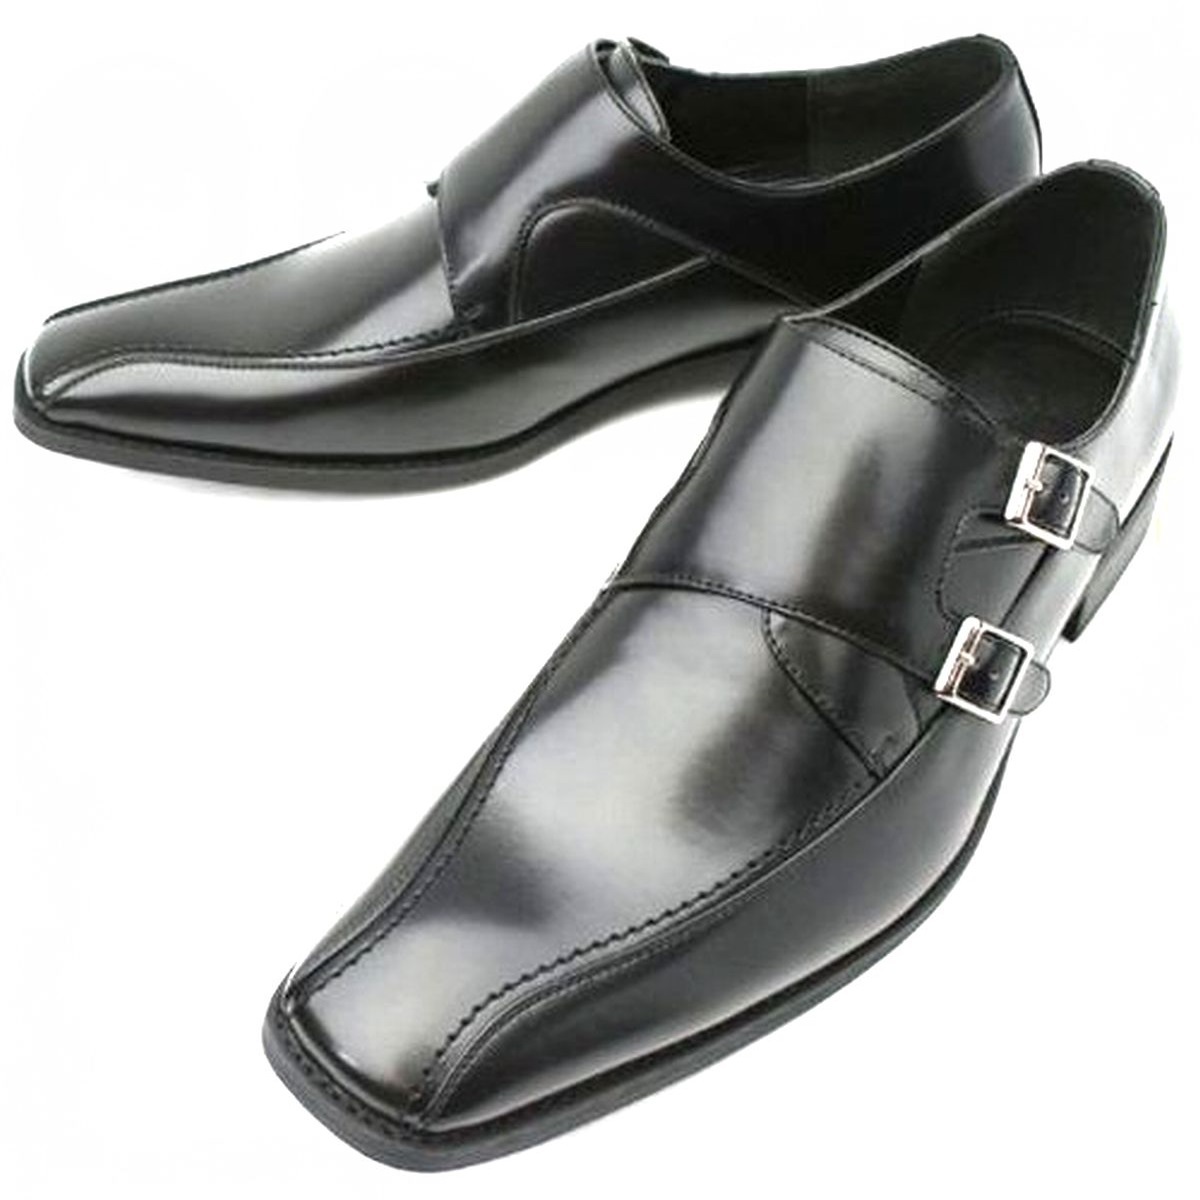 黒 26.5cm お手入れ簡単 雨に強い合皮ビジネスシューズ ダブルモンク紳士靴 ゆったり幅広 某有名靴メーカー同工場制作 本州送料無料 103_画像8